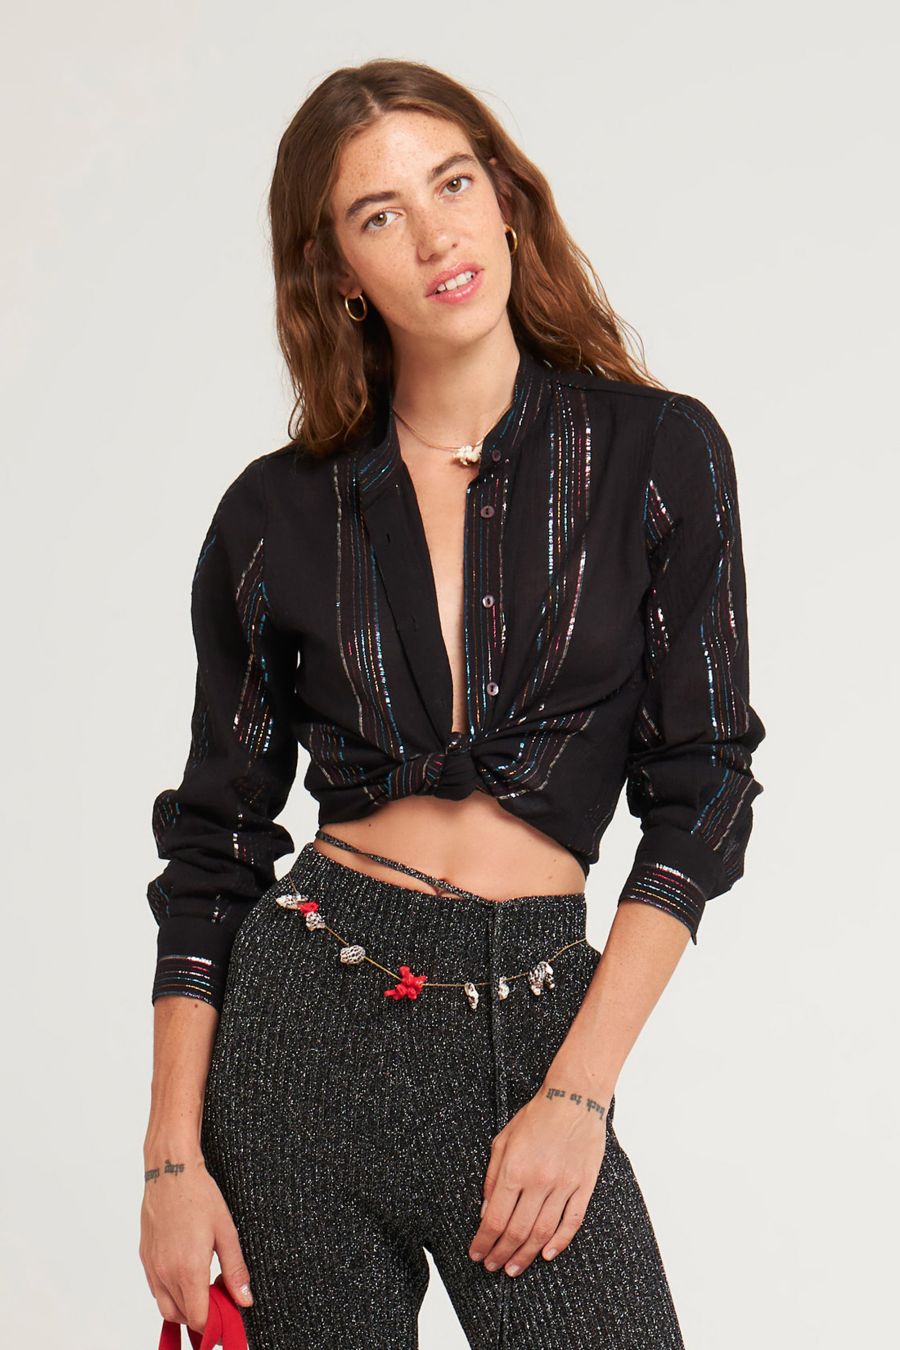 Antikbatik Mimi blouse